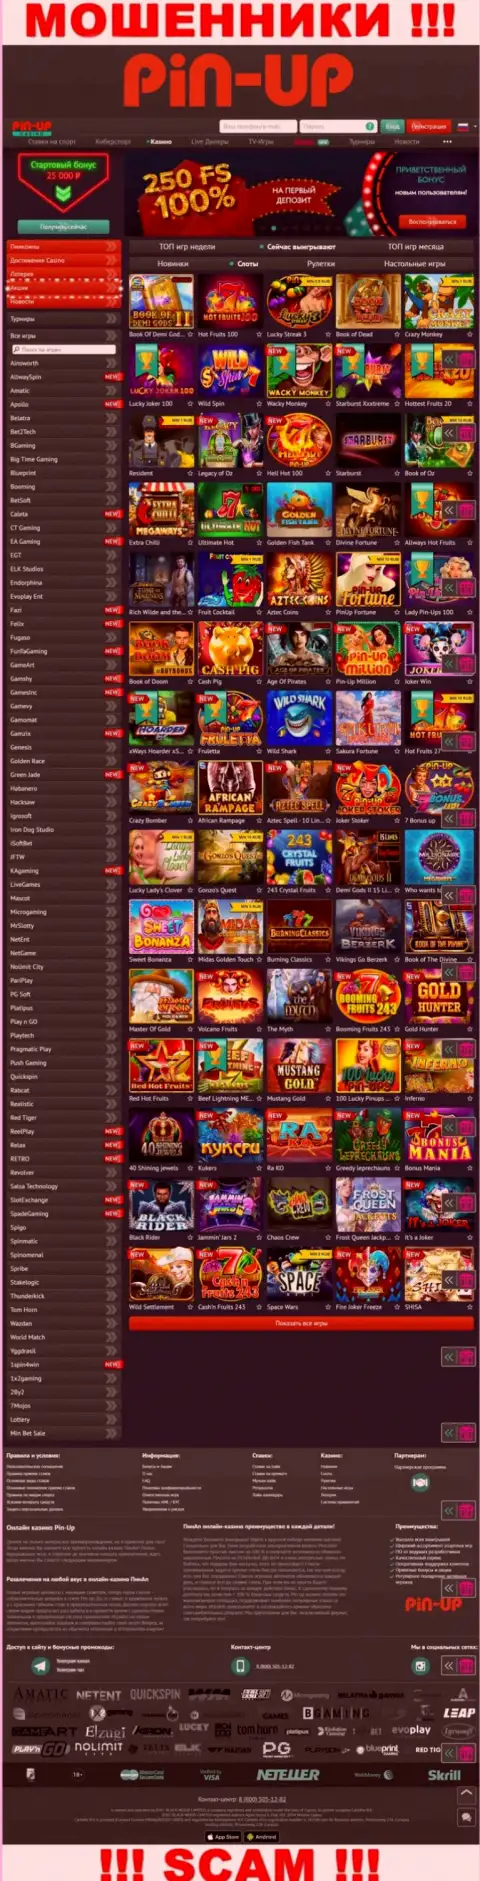 Pin-Up Casino - это официальный сайт мошенников PinUp Casino